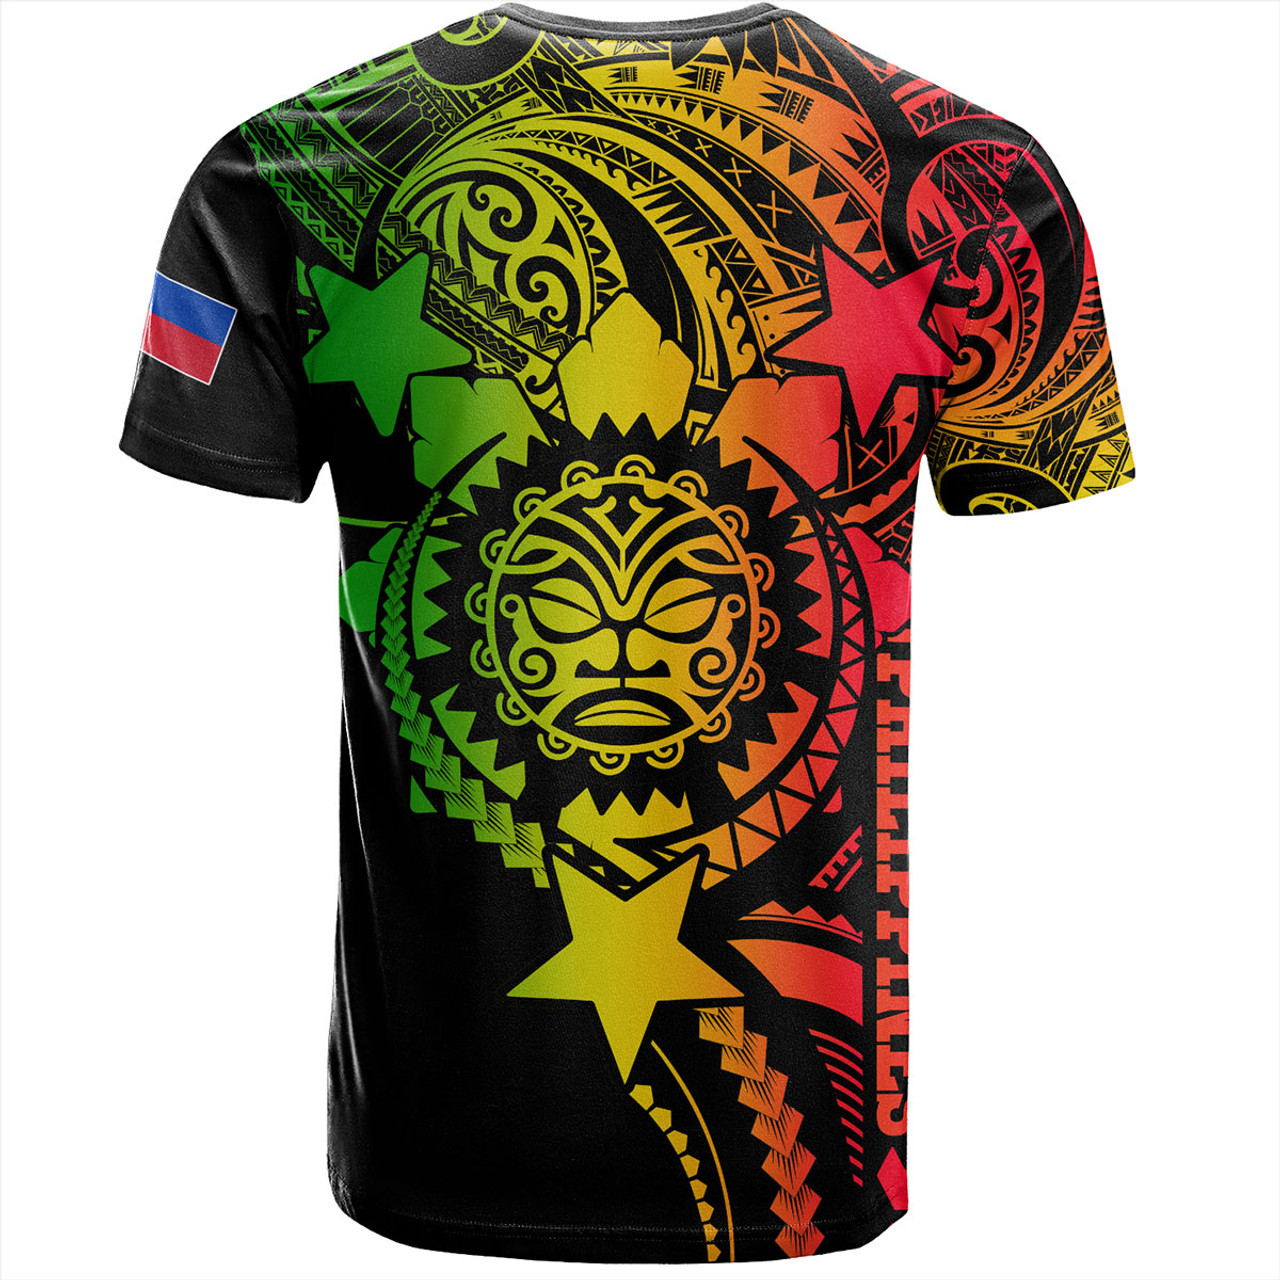 Philippines Filipinos T-Shirt - Proud To Be Filipino Tribal Sun Batok Reggae Style